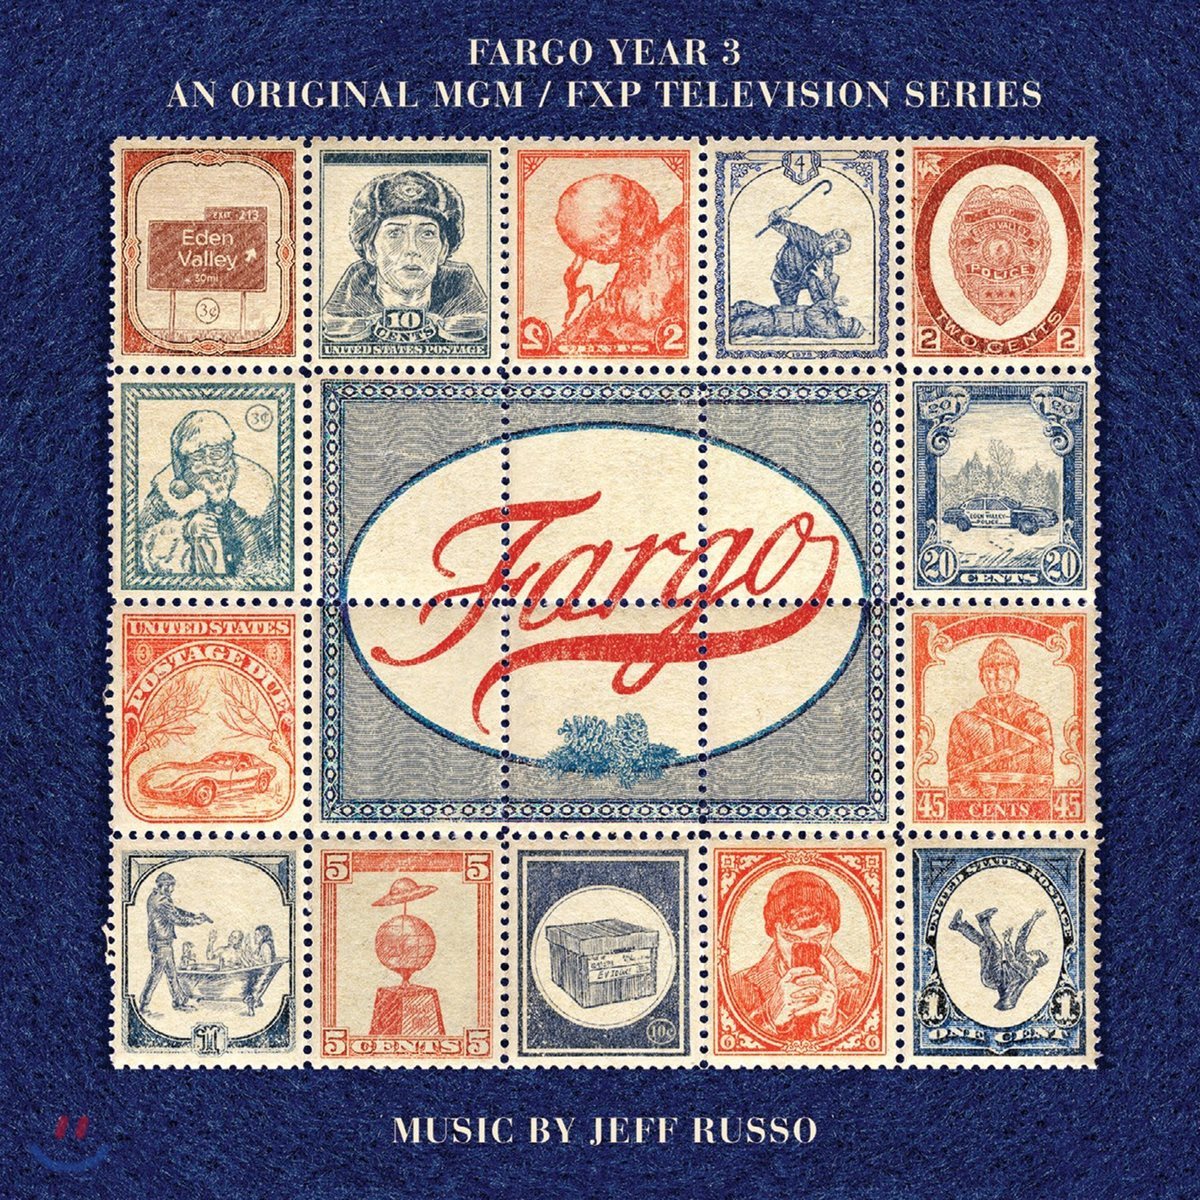 파고 시즌 3 드라마 음악 (Fargo Year 3 - MGM/FXP Television Series OST by Jeff Russo 제프 루소)